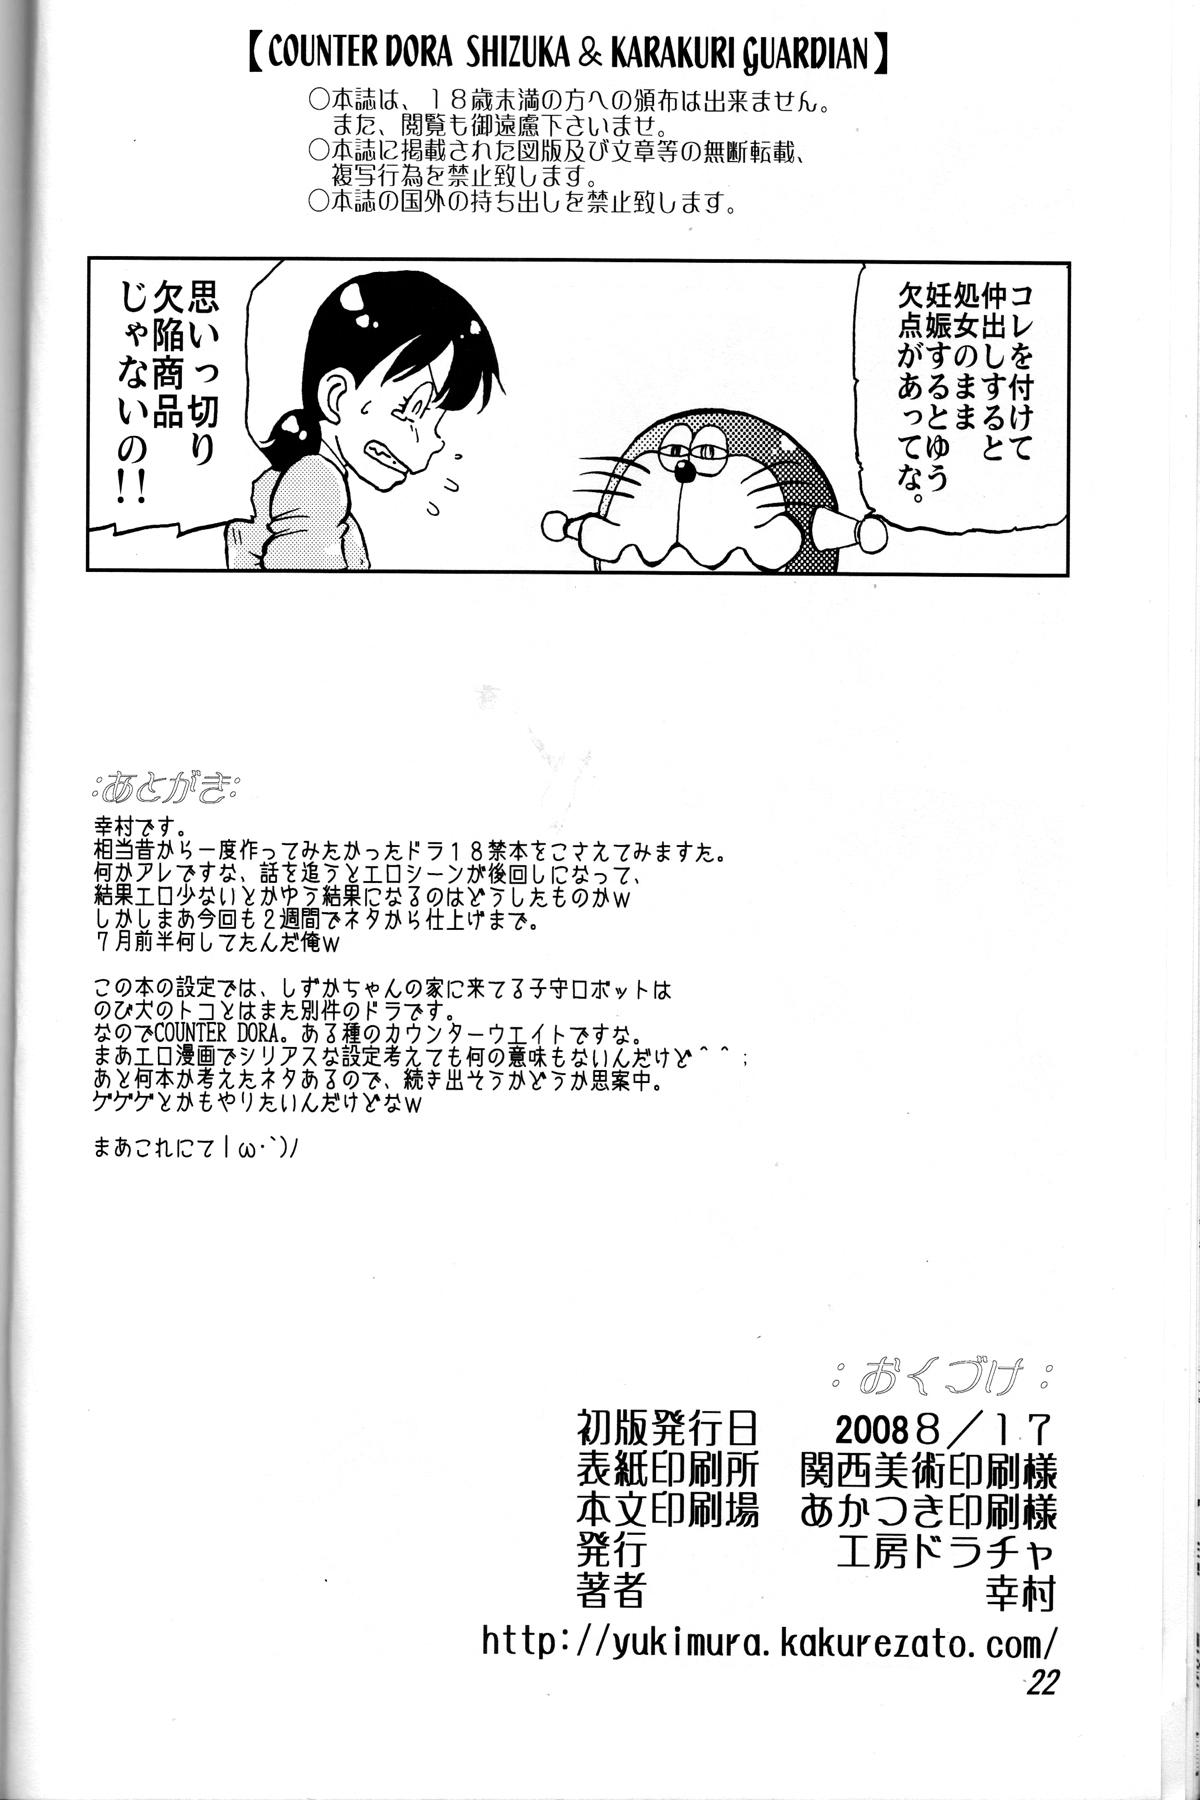 Gorgeous Shizuka & Kurikuri Guardian - Doraemon Kiteretsu daihyakka Milk - Page 22